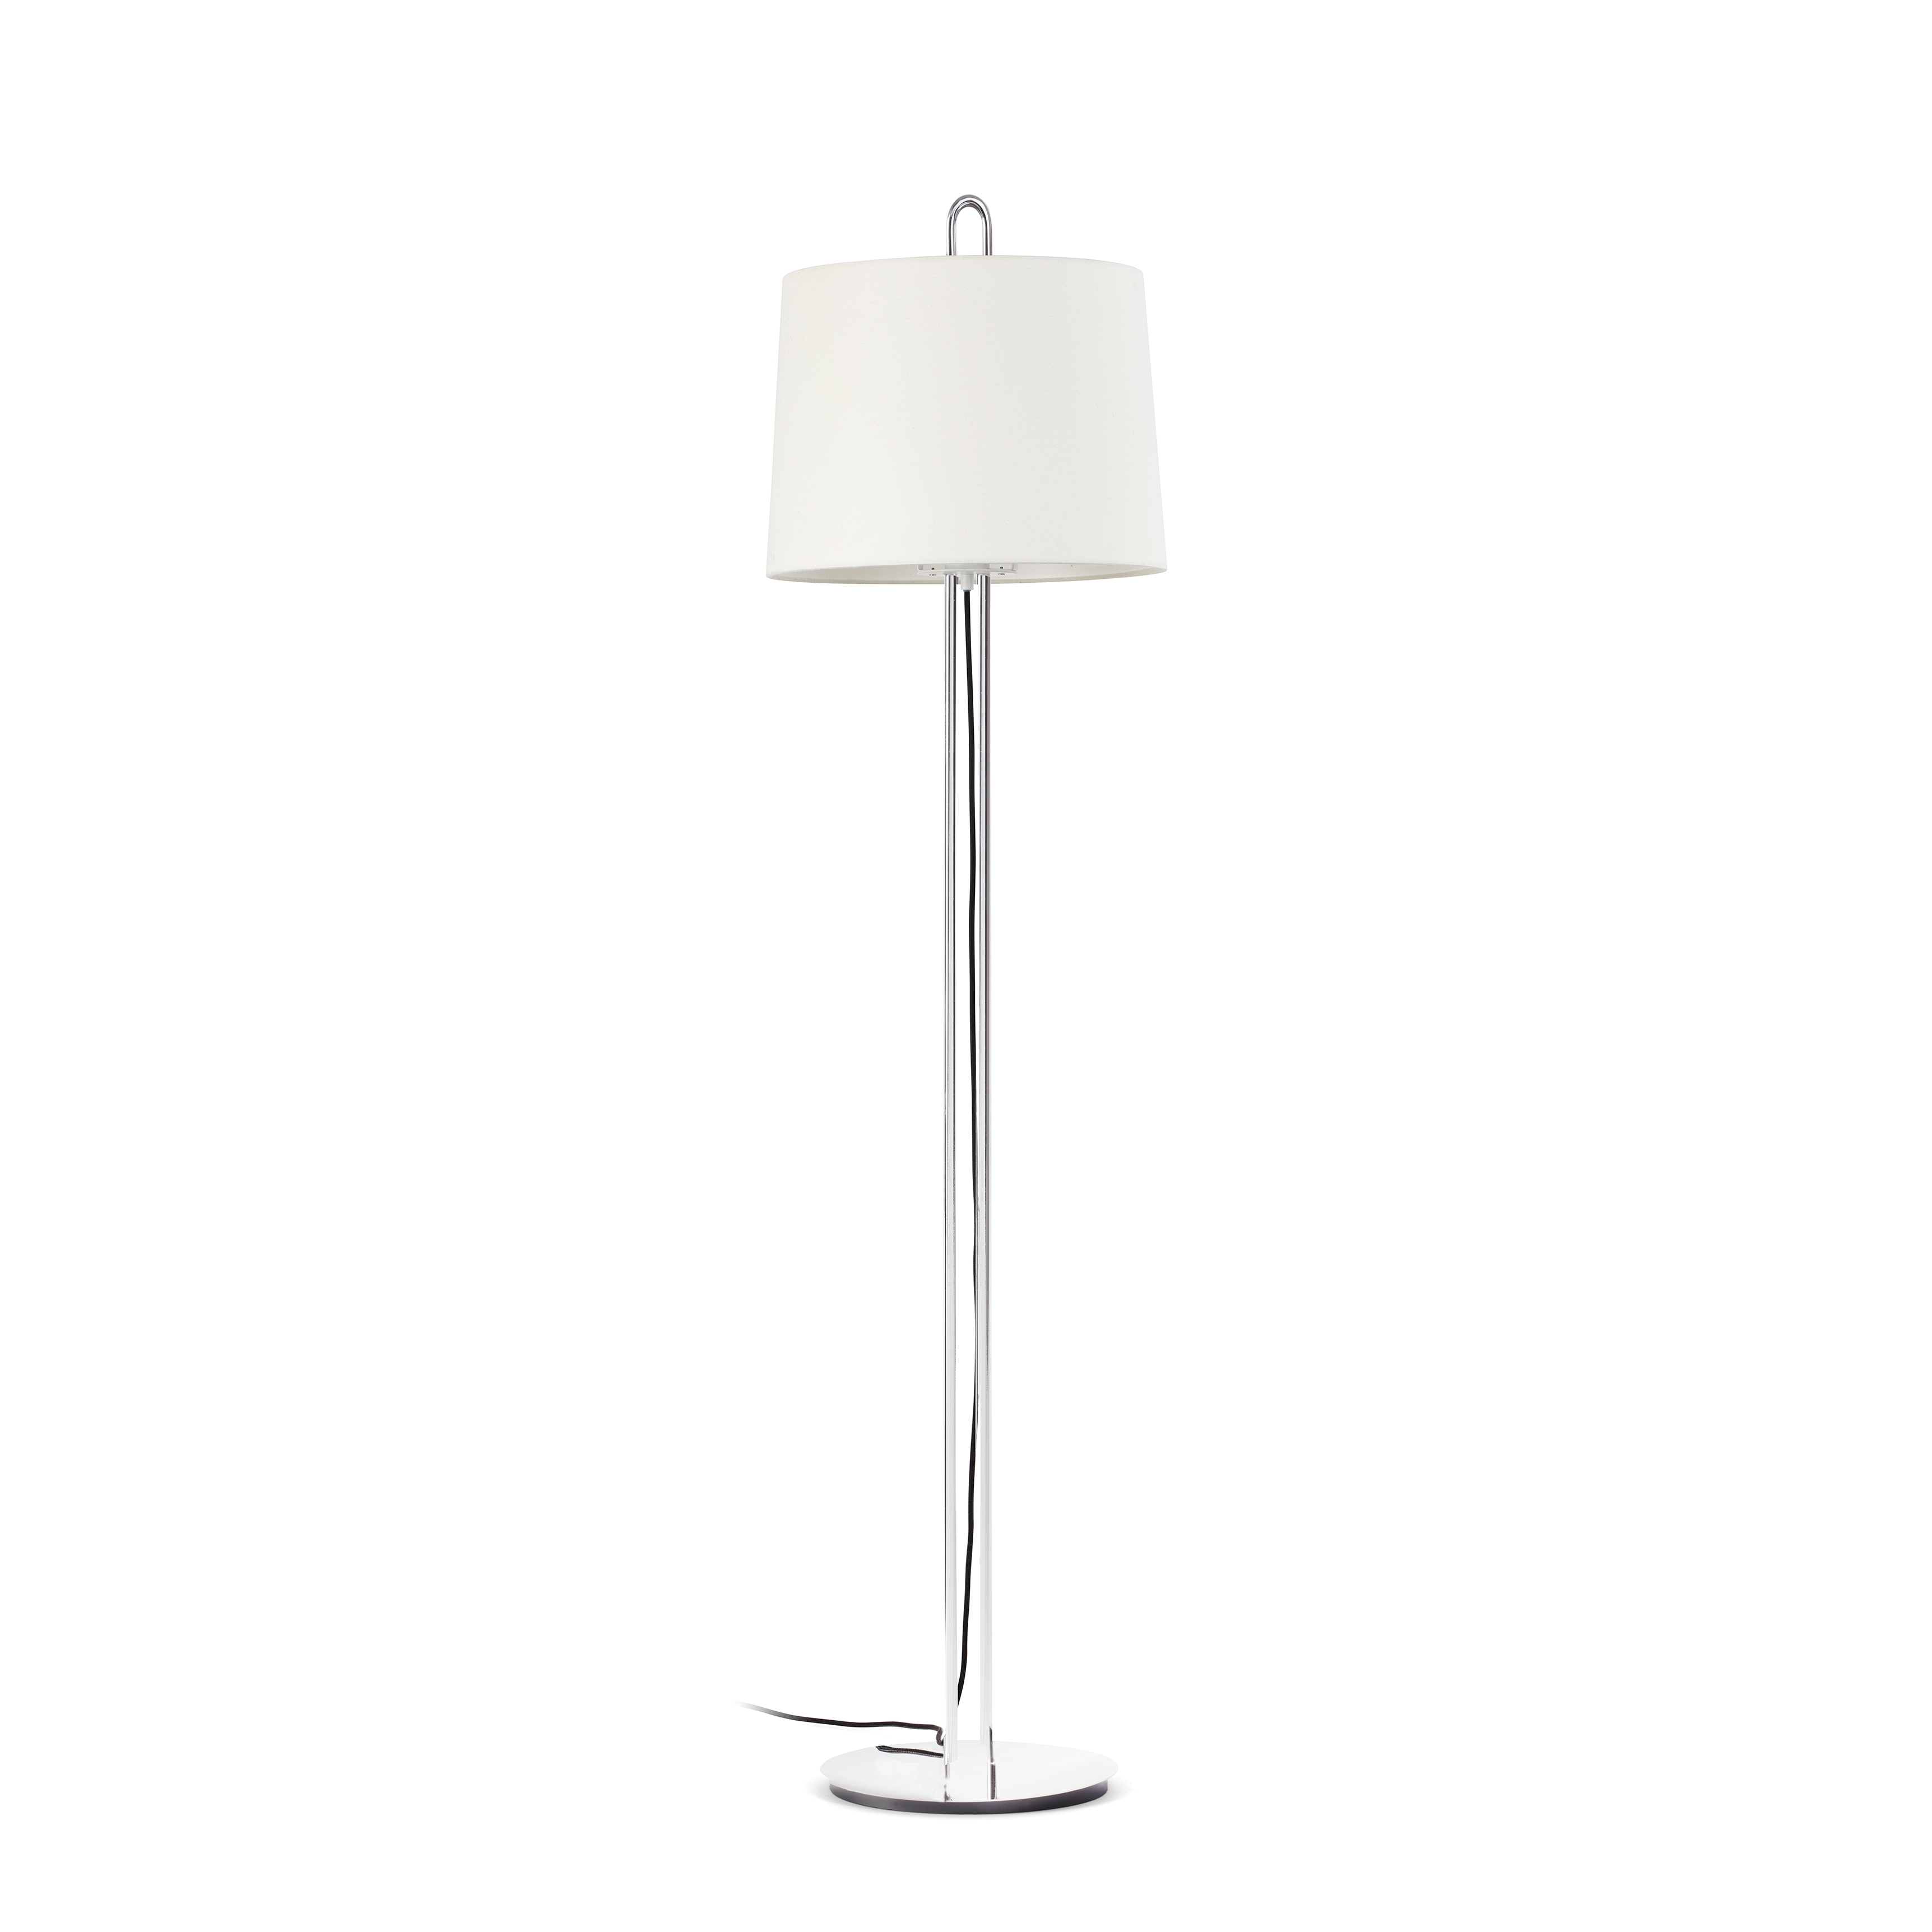 Lampadar / Lampa de podea moderna design elegant MONTREAL crom/alb 24037+2P0131  